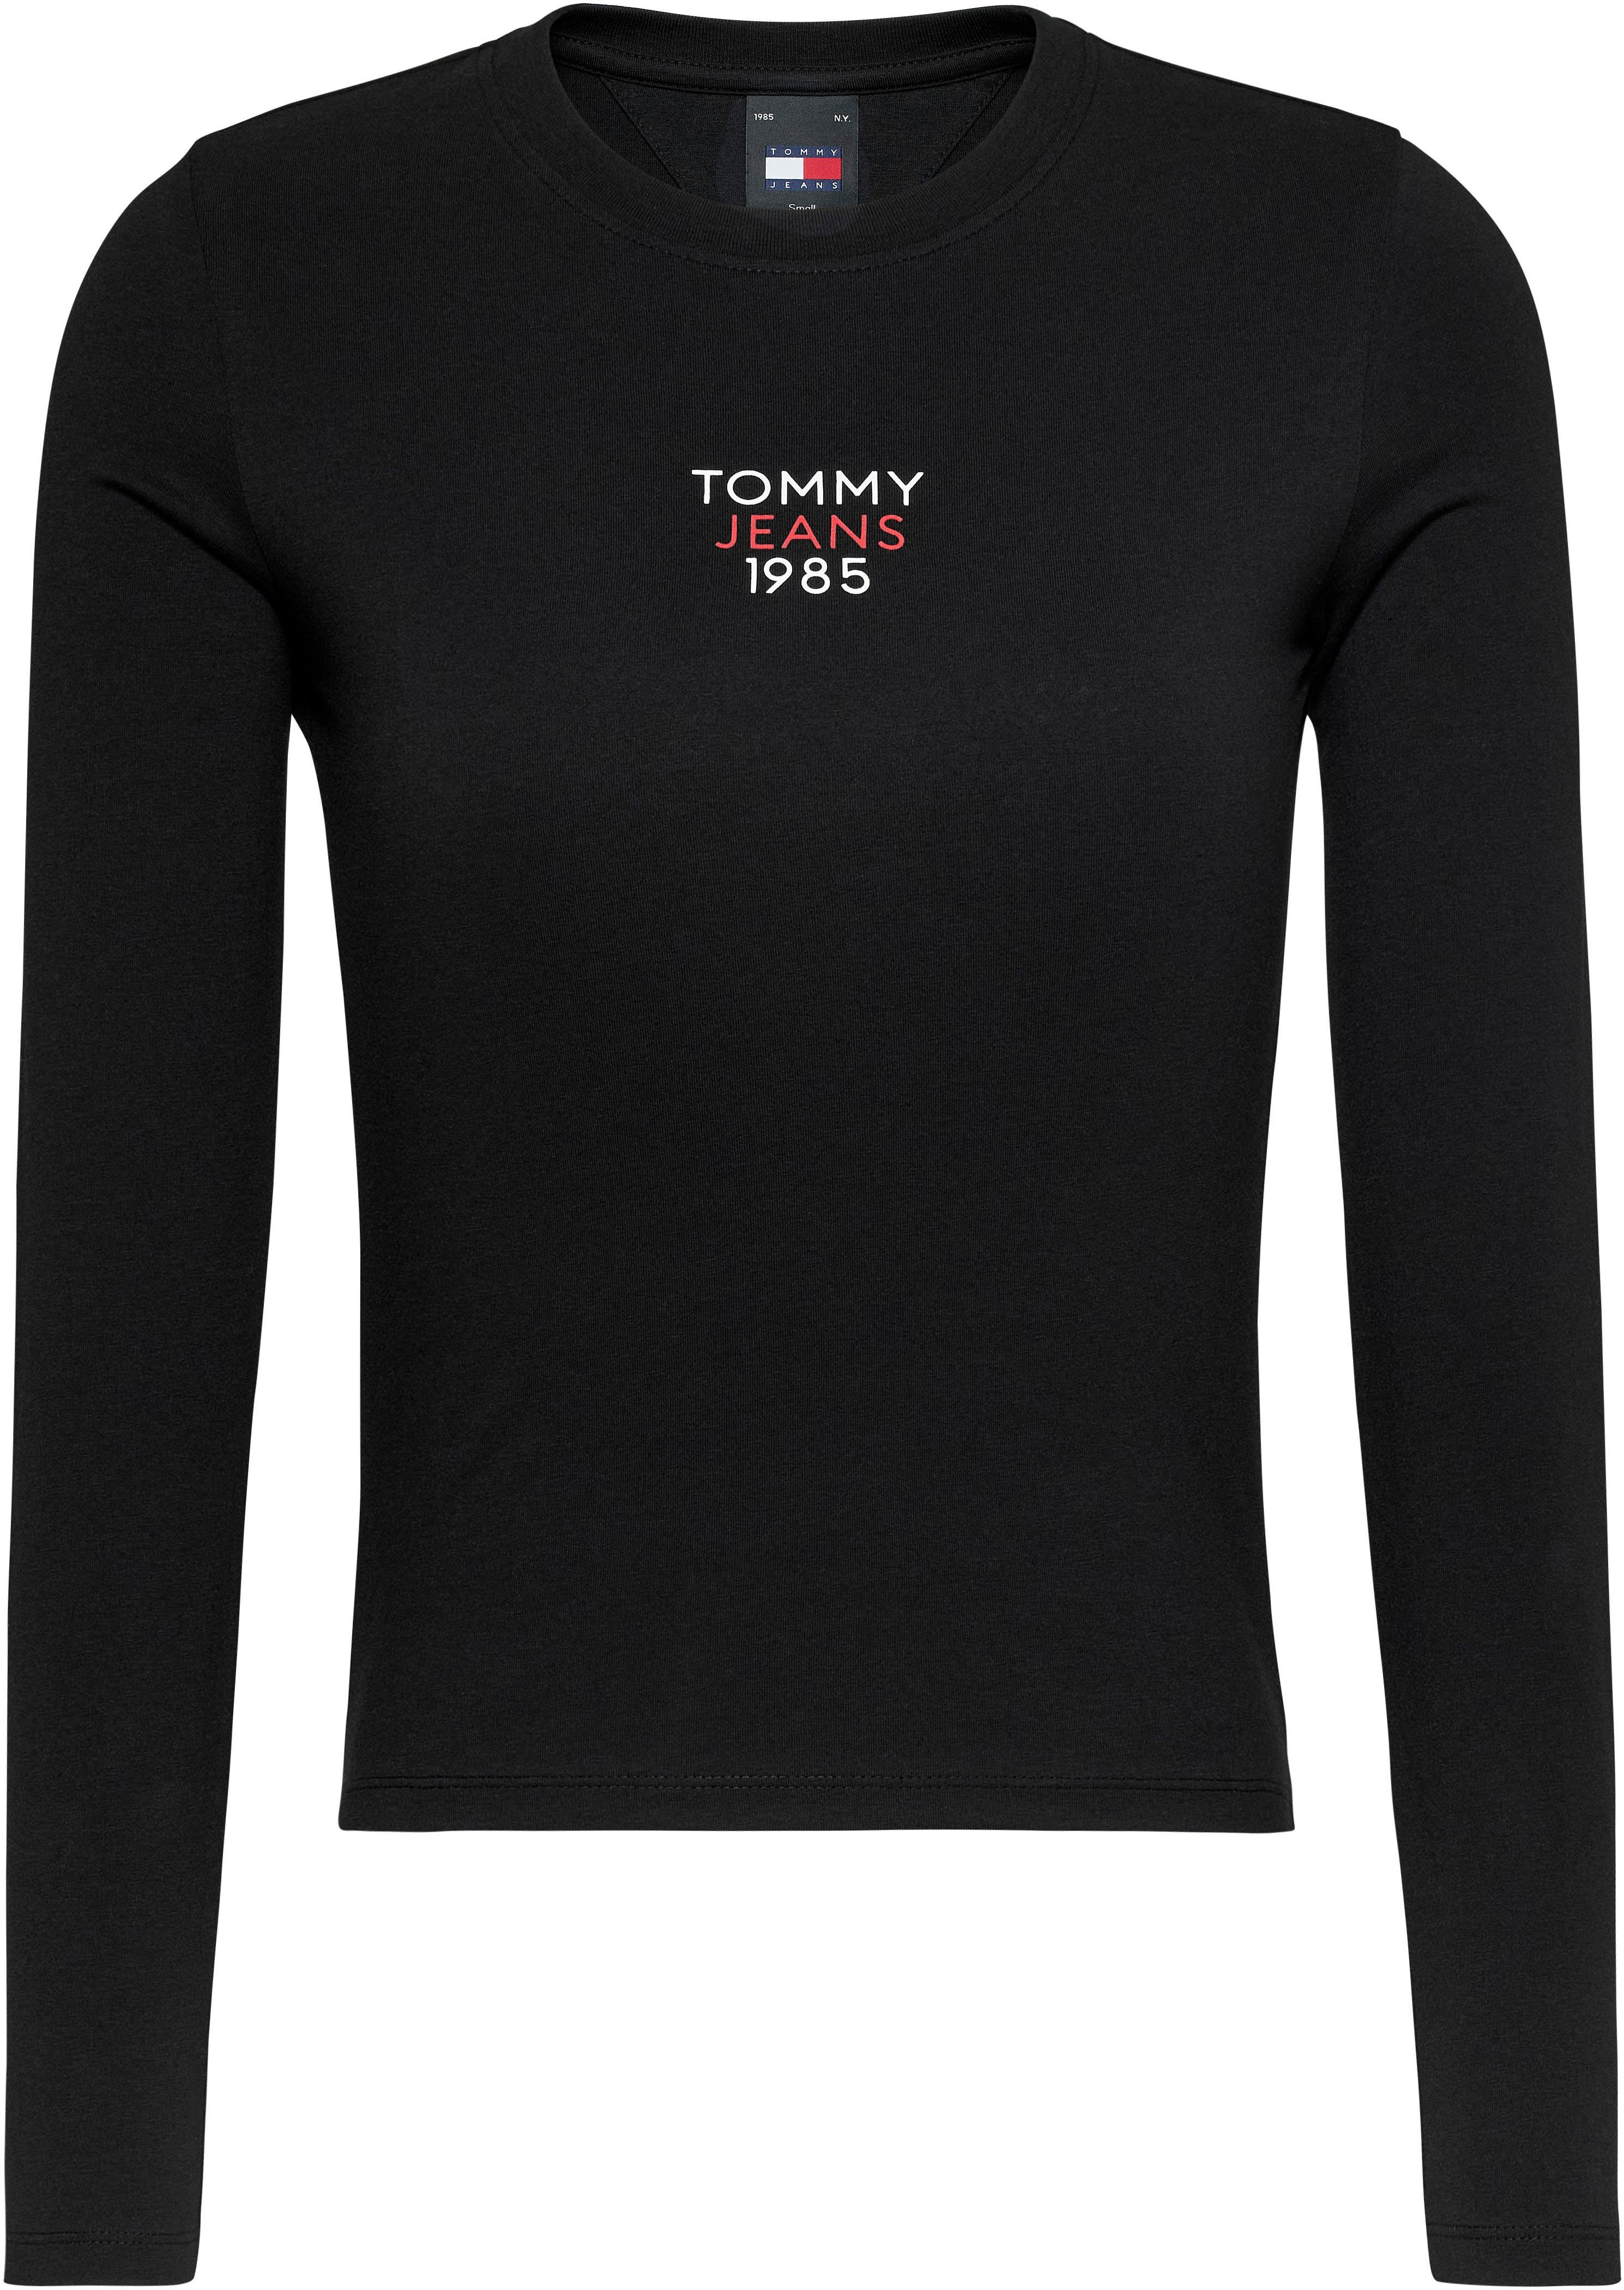 OTTO Tommy Shirts Jeans kaufen » | Hilfiger Shirts Denim